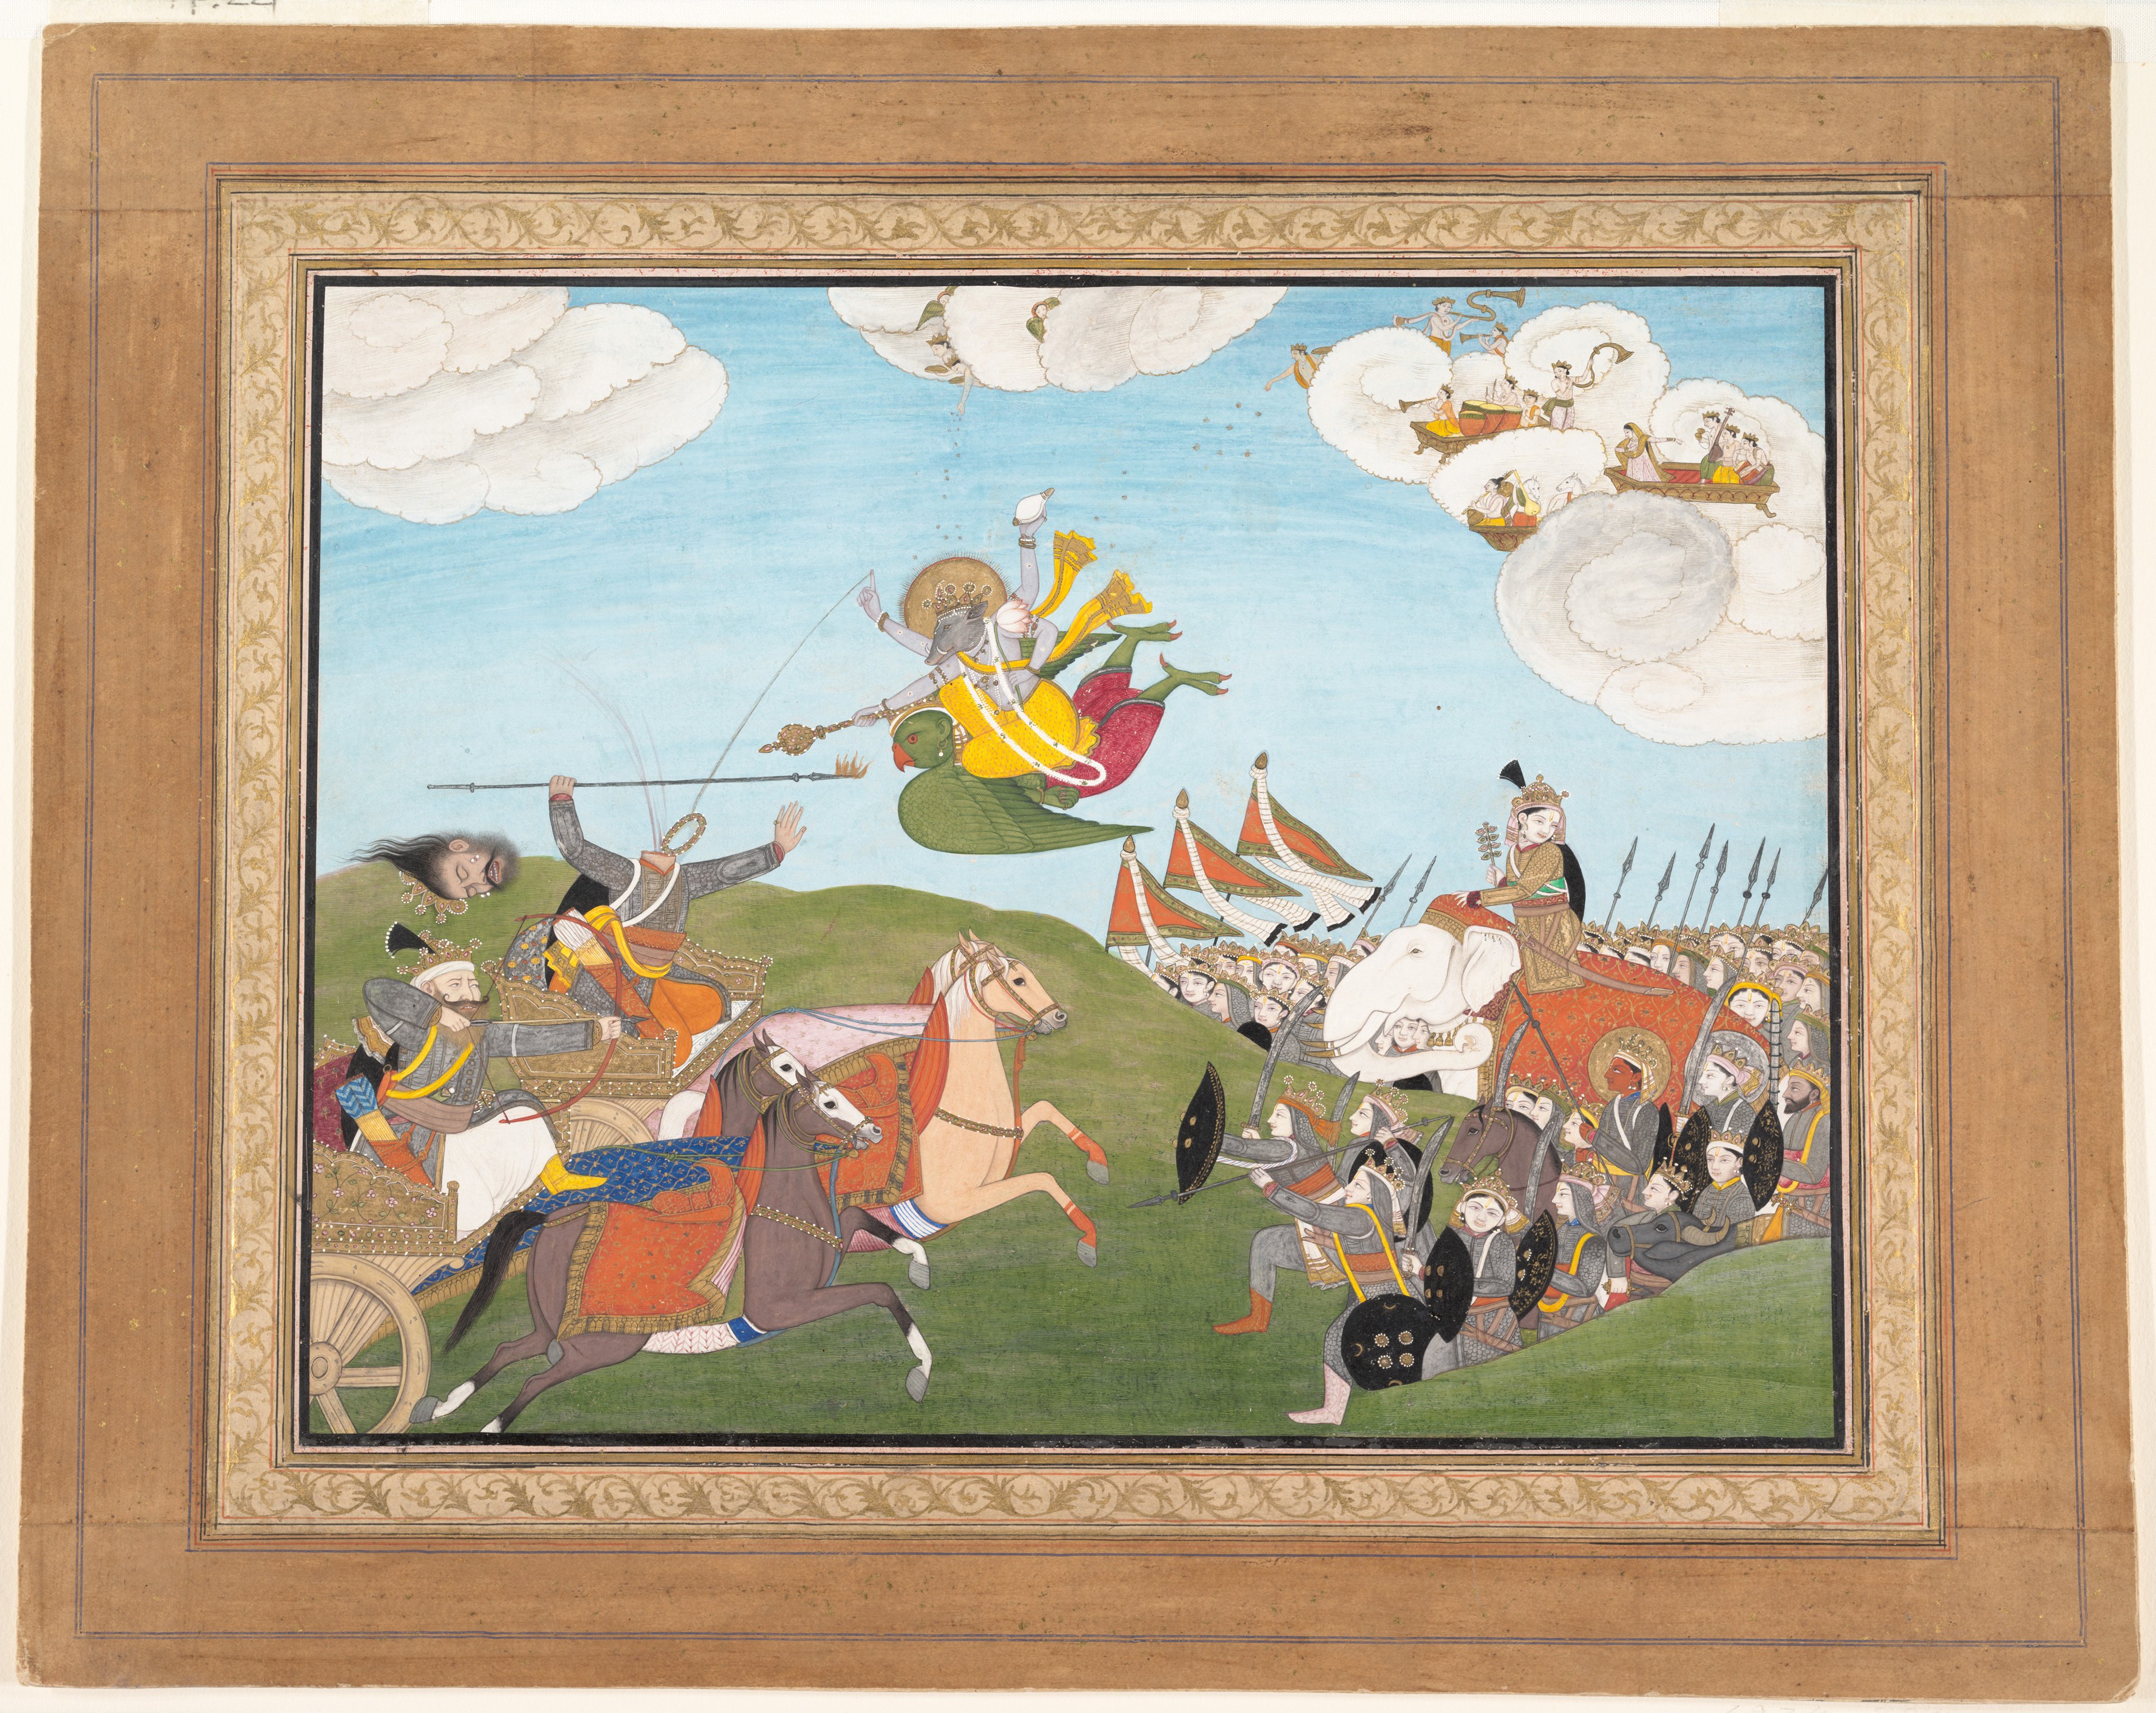 Vishnu avatars: Vishnu as Varaha, the Boar Avatar, Slays Demon Banasur, ca. 1800, Punjab Hills, Guler, India, The Metropolitan Museum of Art, New York, NY, USA. 